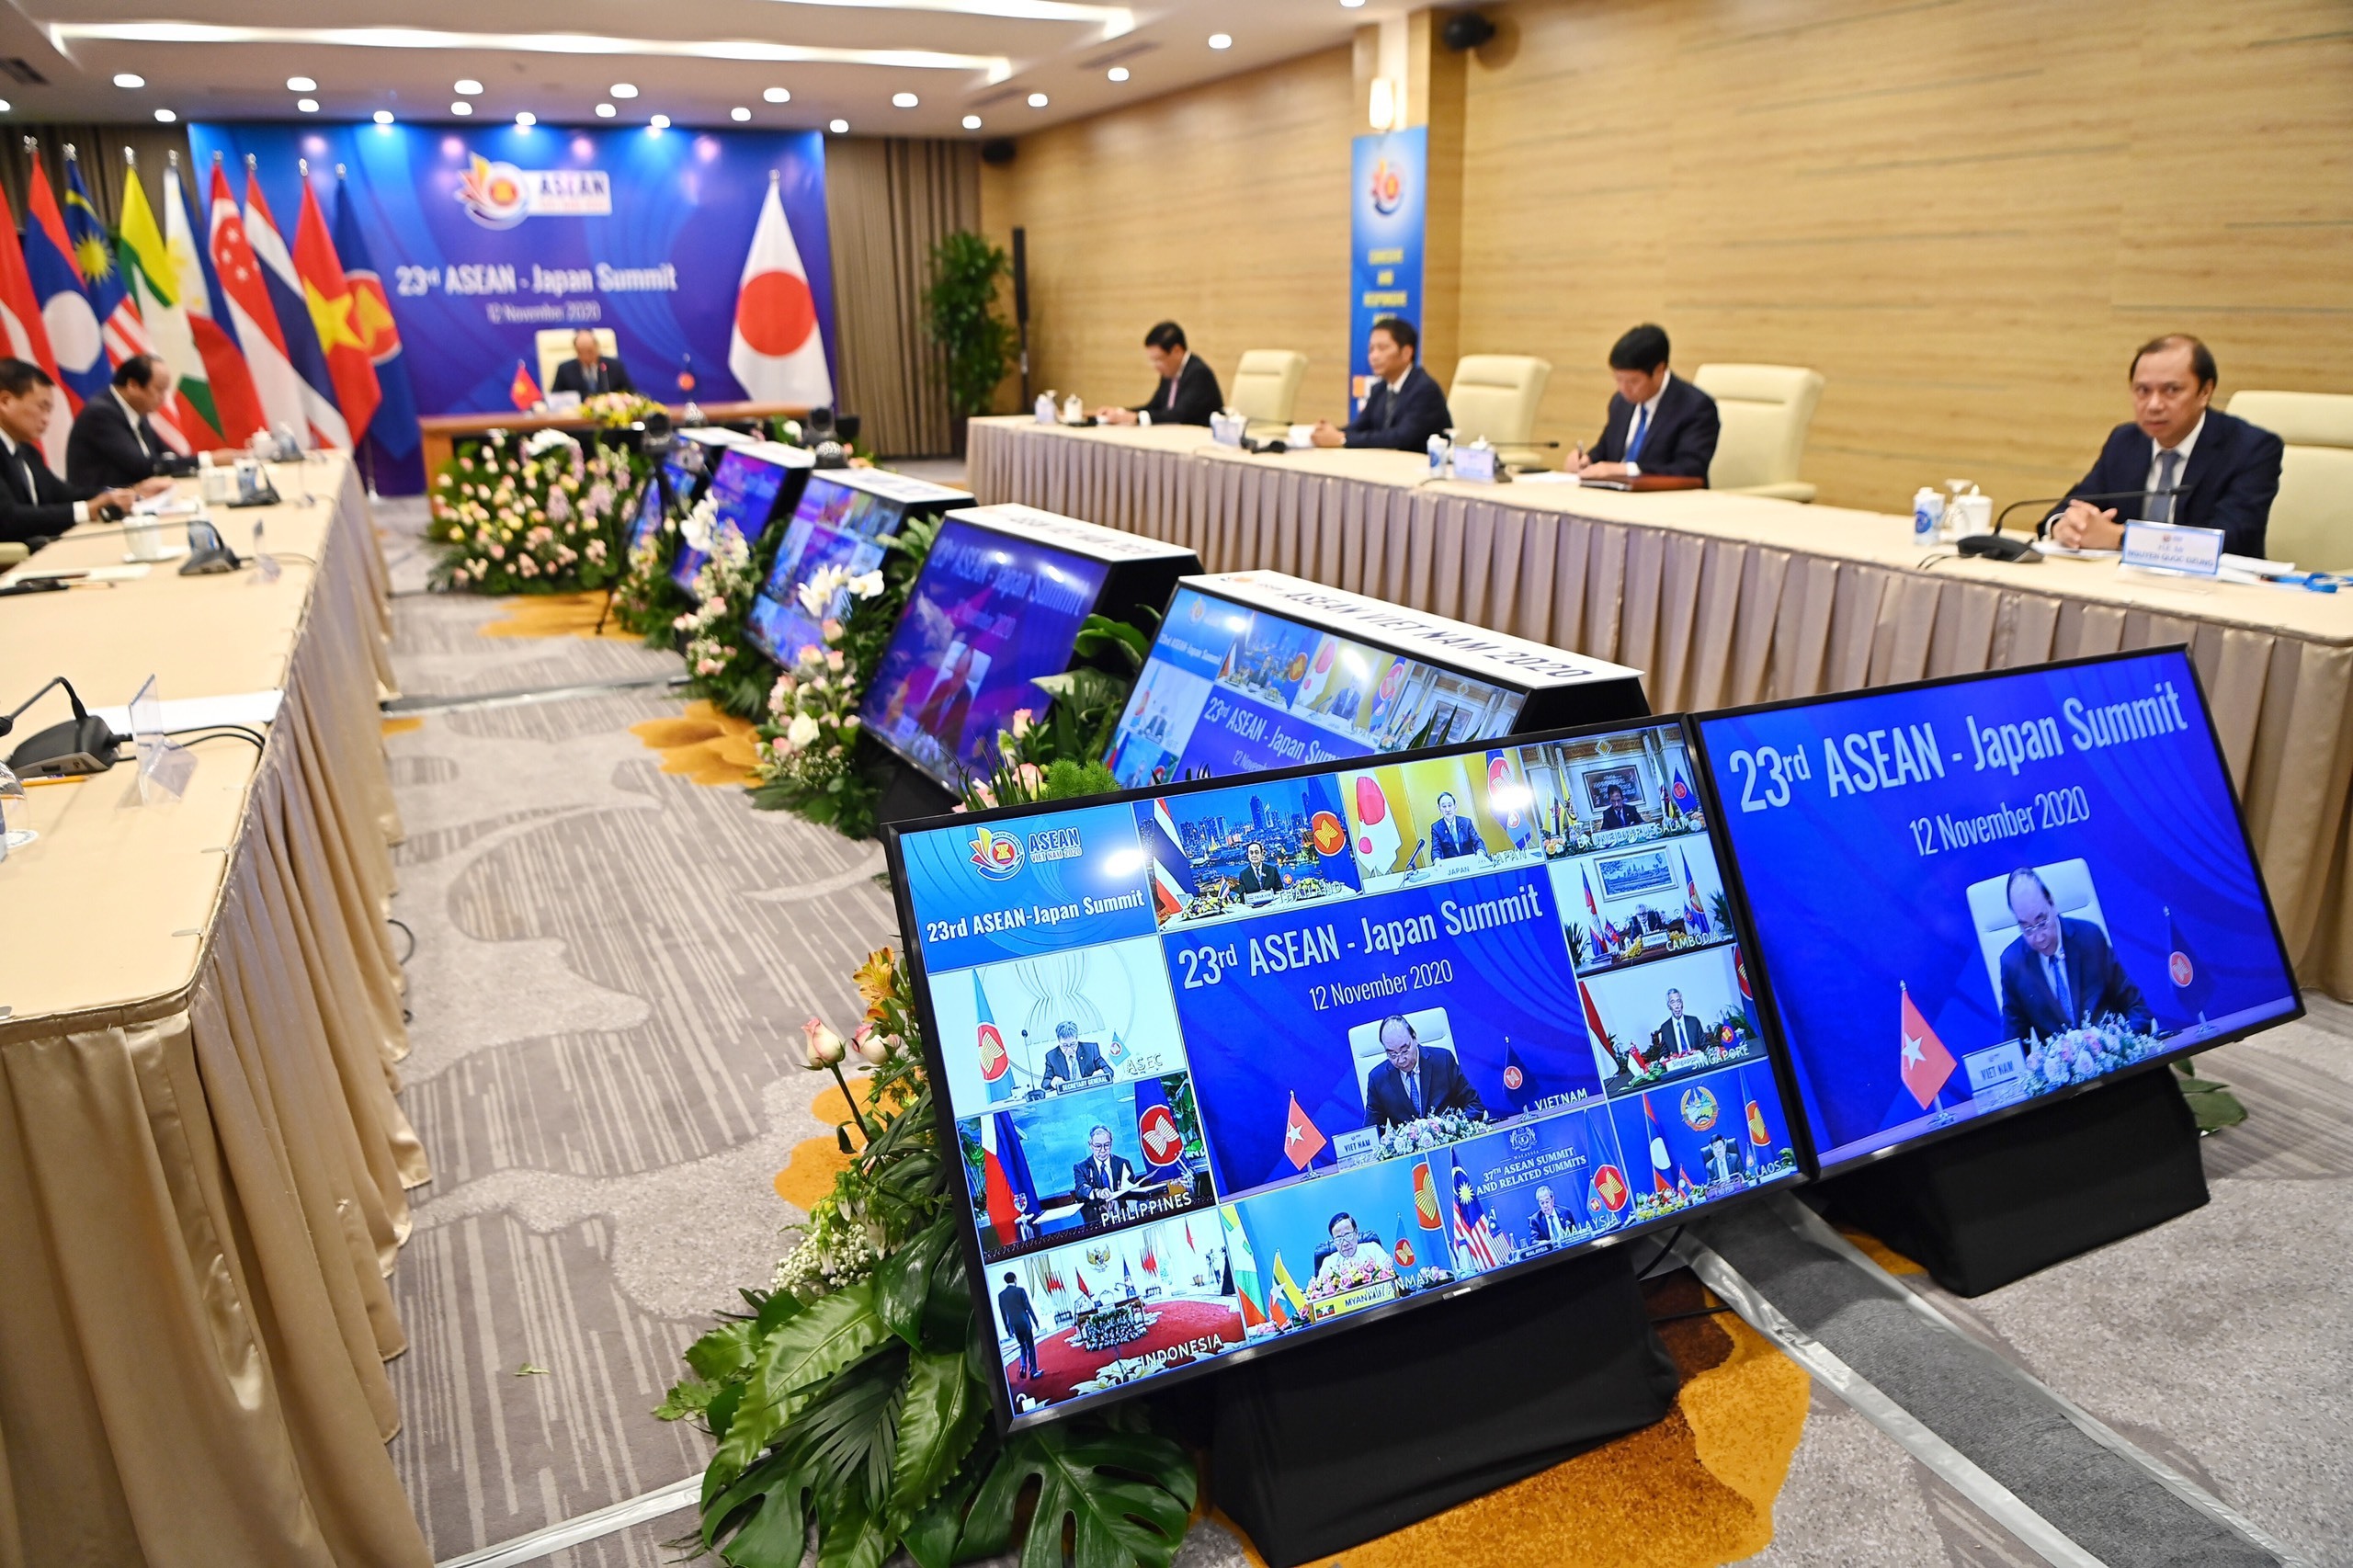 Mối quan hệ đối tác từ trái tim đến trái tim giữa ASEAN và Nhật Bản